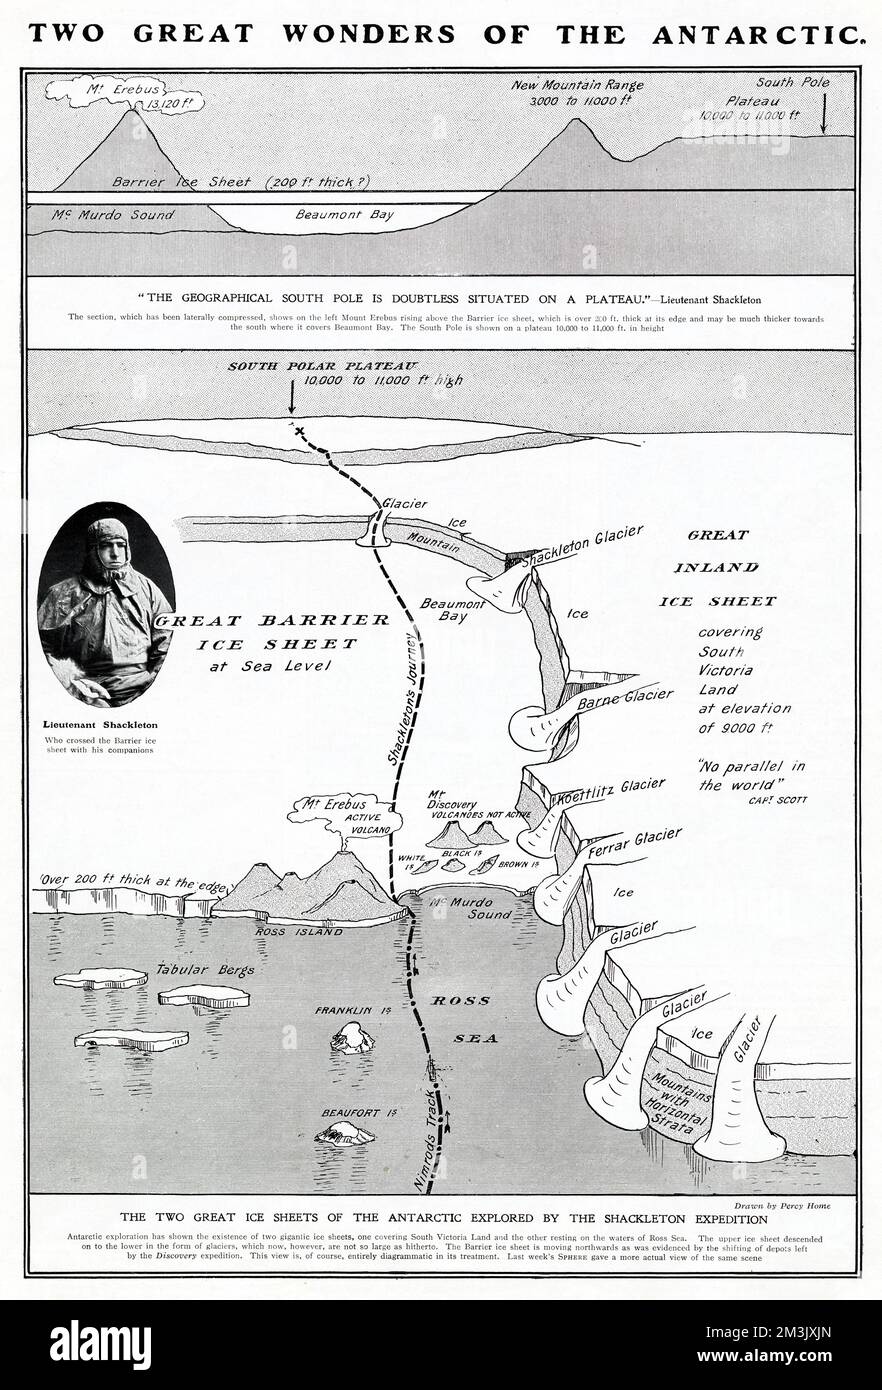 Die Route, gefolgt von Sir Ernest Shackleton's (1874 - 1922), Gruppe in Richtung Südpol, während der Nimrod Antarktis Expedition von 1908-09. Shackleton ist auf dem Foto im Bild zu sehen. Stockfoto